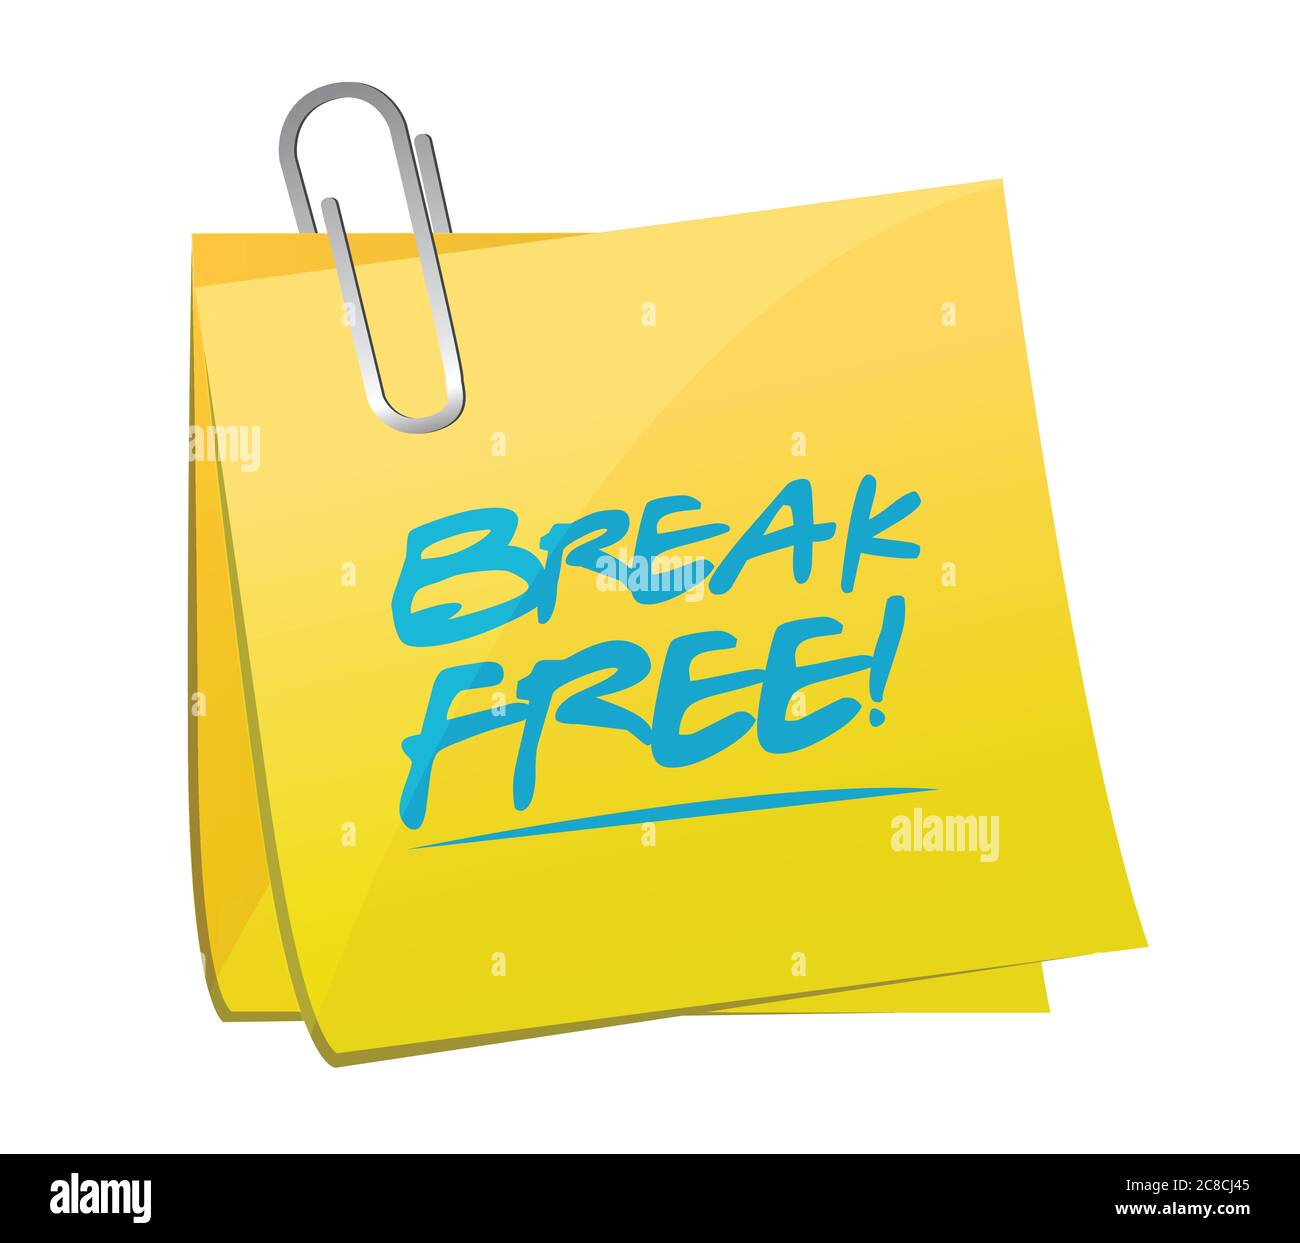 Break free memo post illustration design over a white background Stock Vector